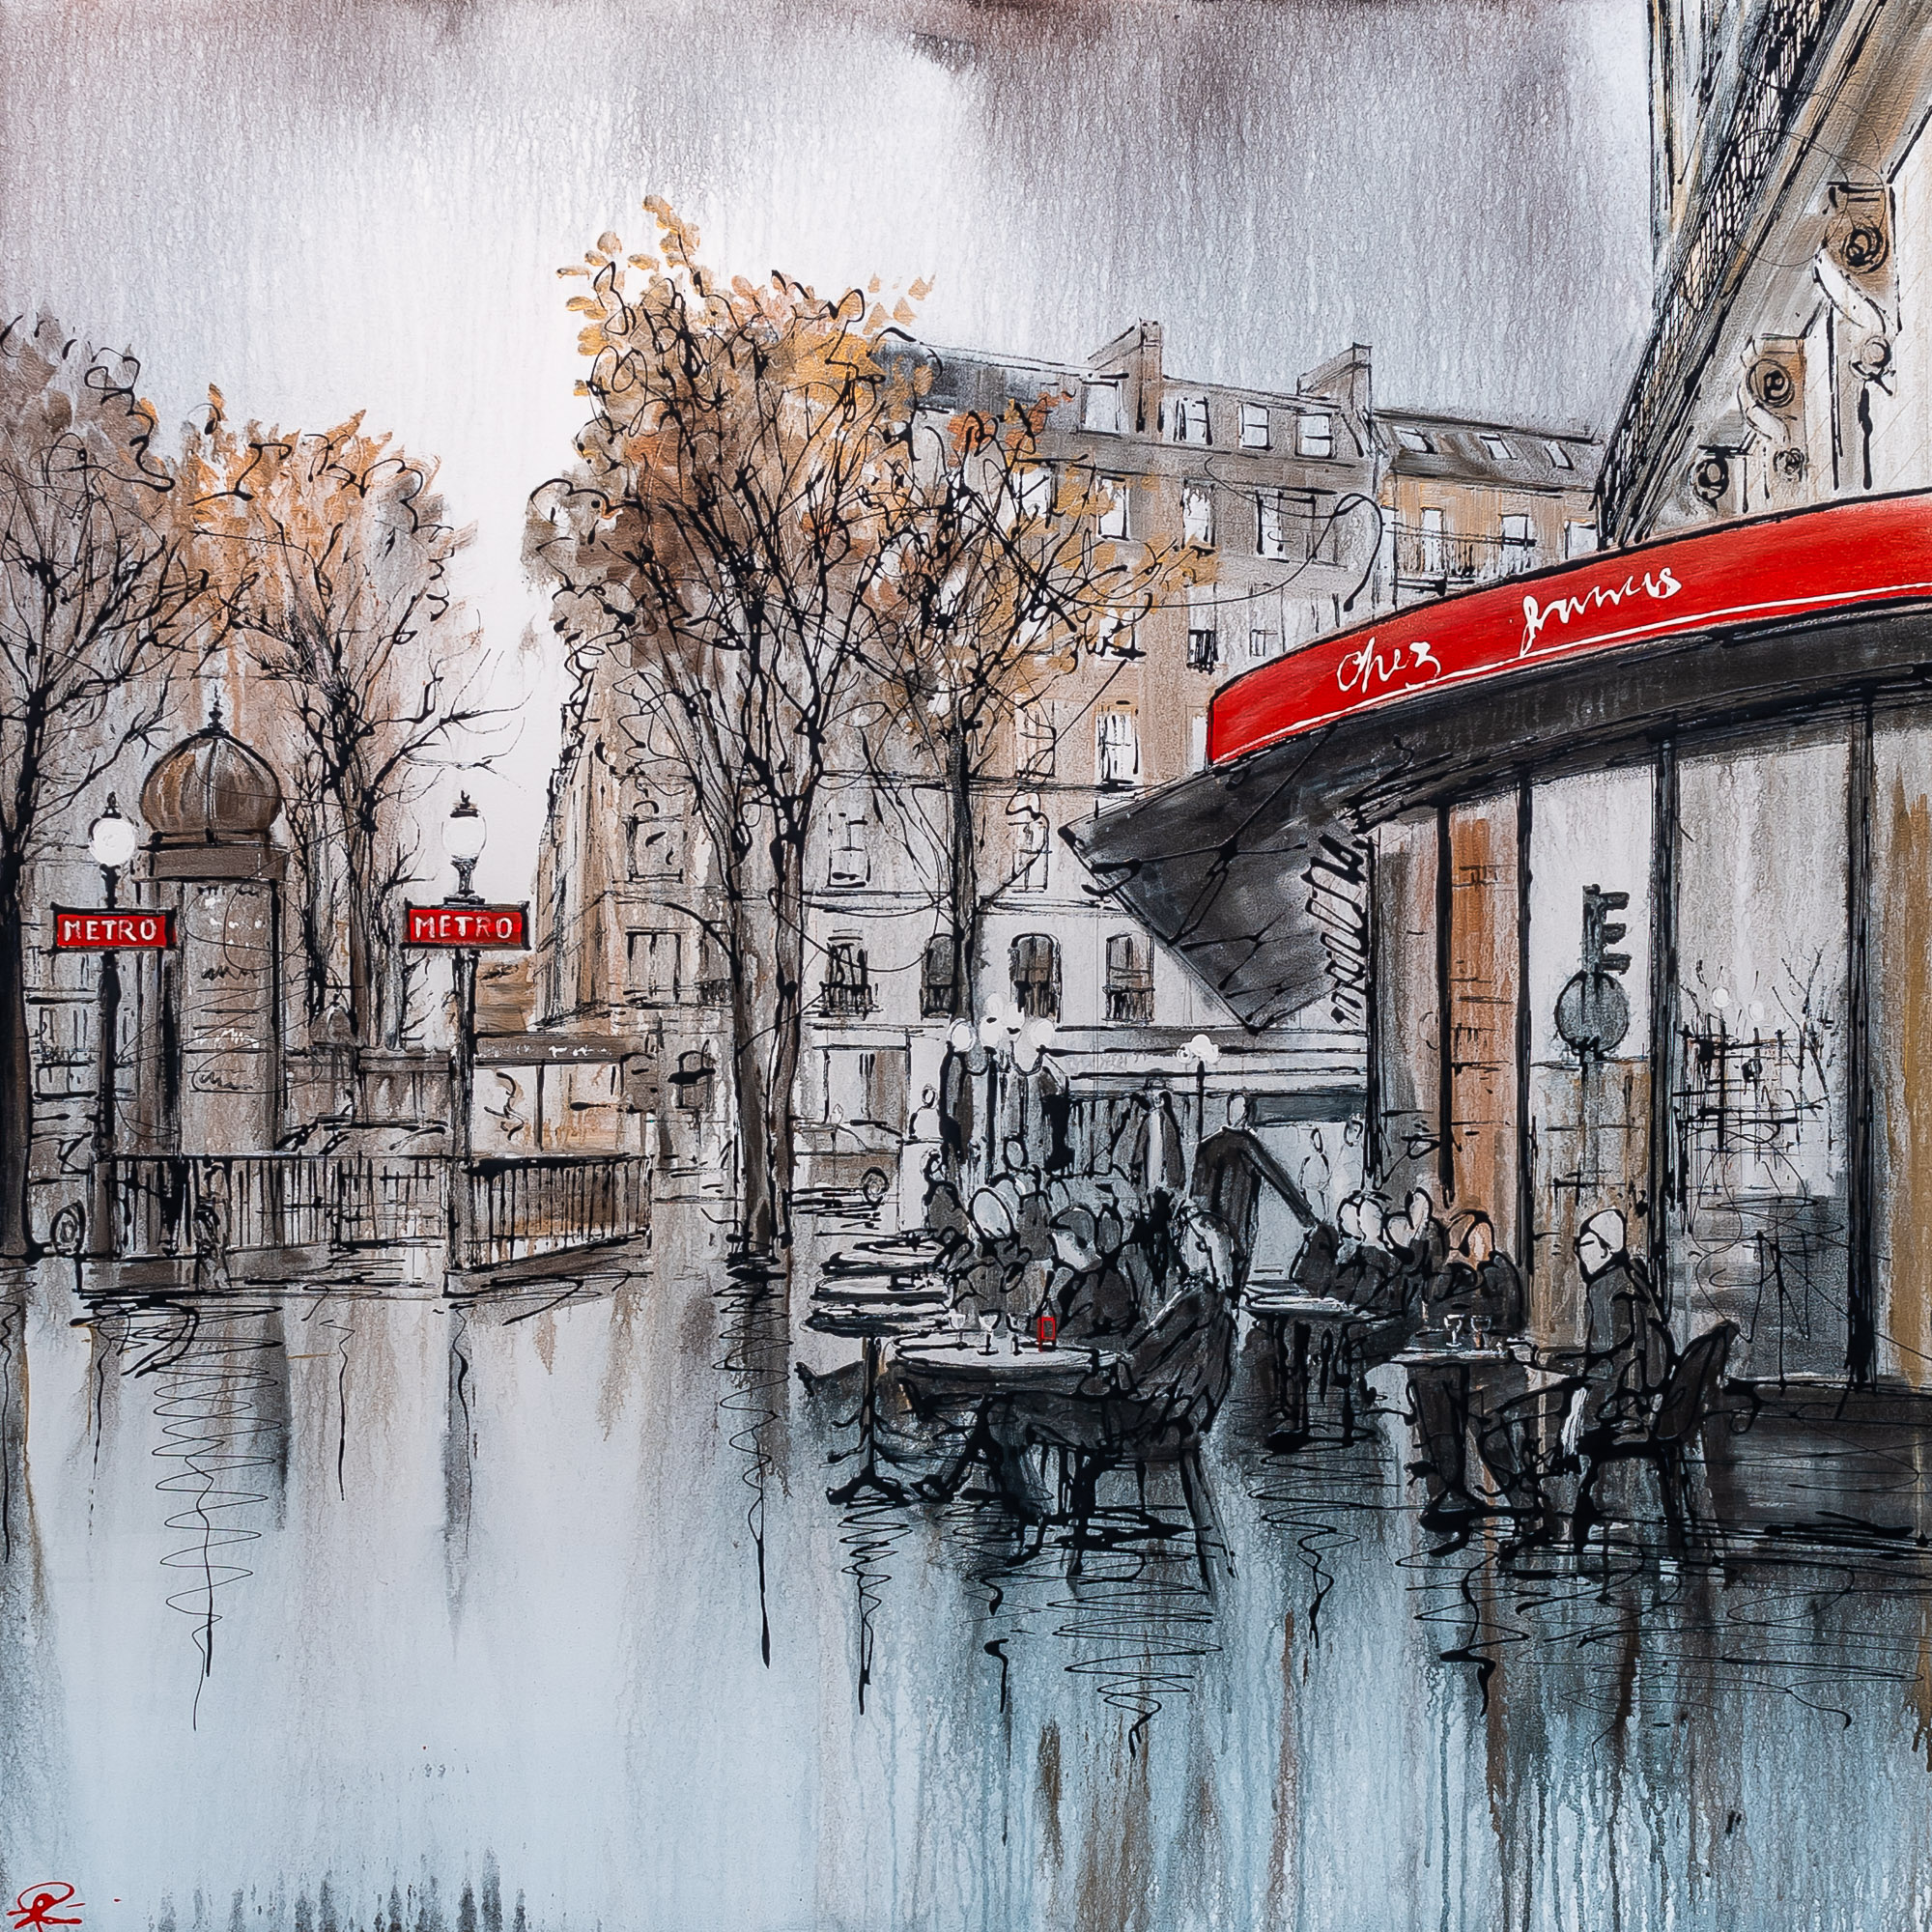 Parisian Life by Paul Kenton, UK contemporary cityscape artist, an original Paris café painting from his Paris Collection